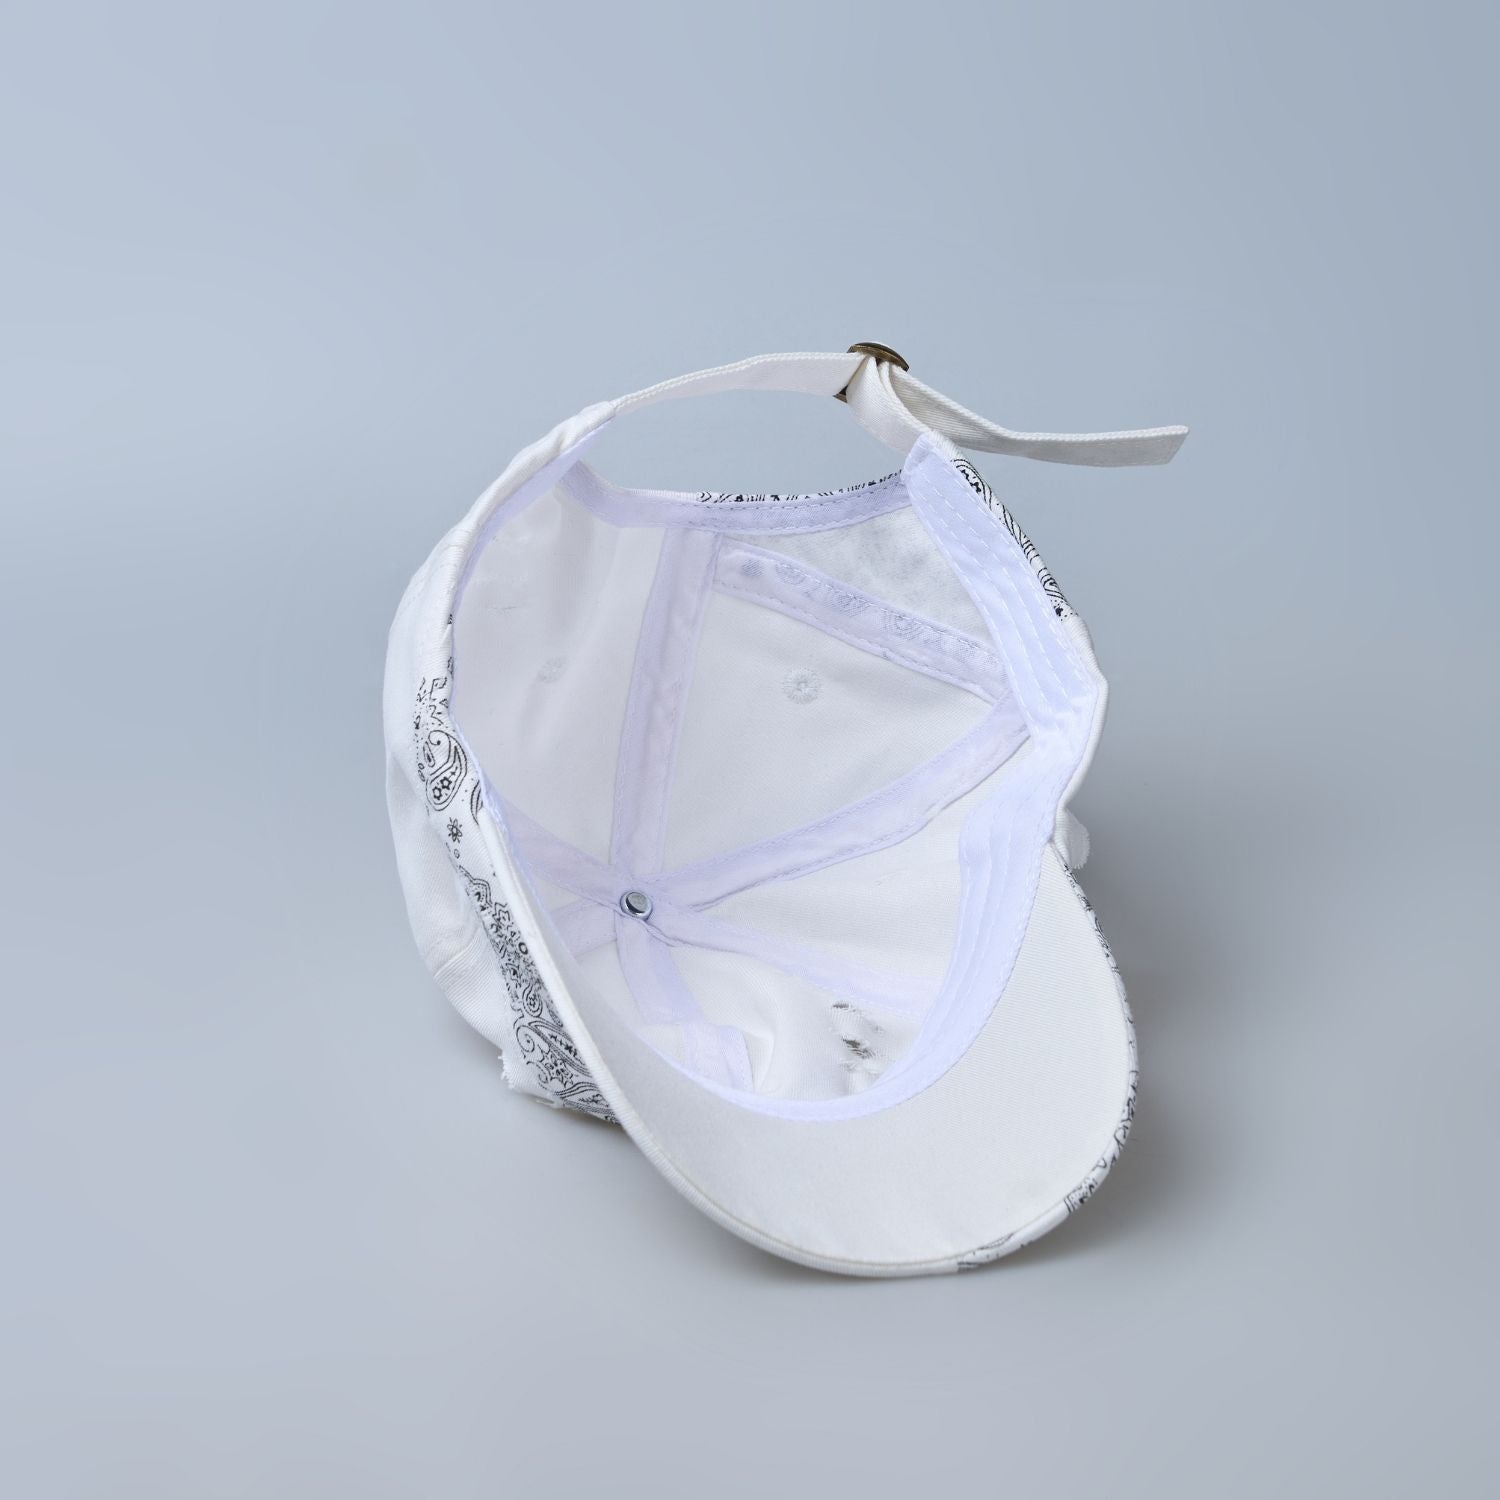 white colored, wide brim designer cap for men with adjustable strap, inside.